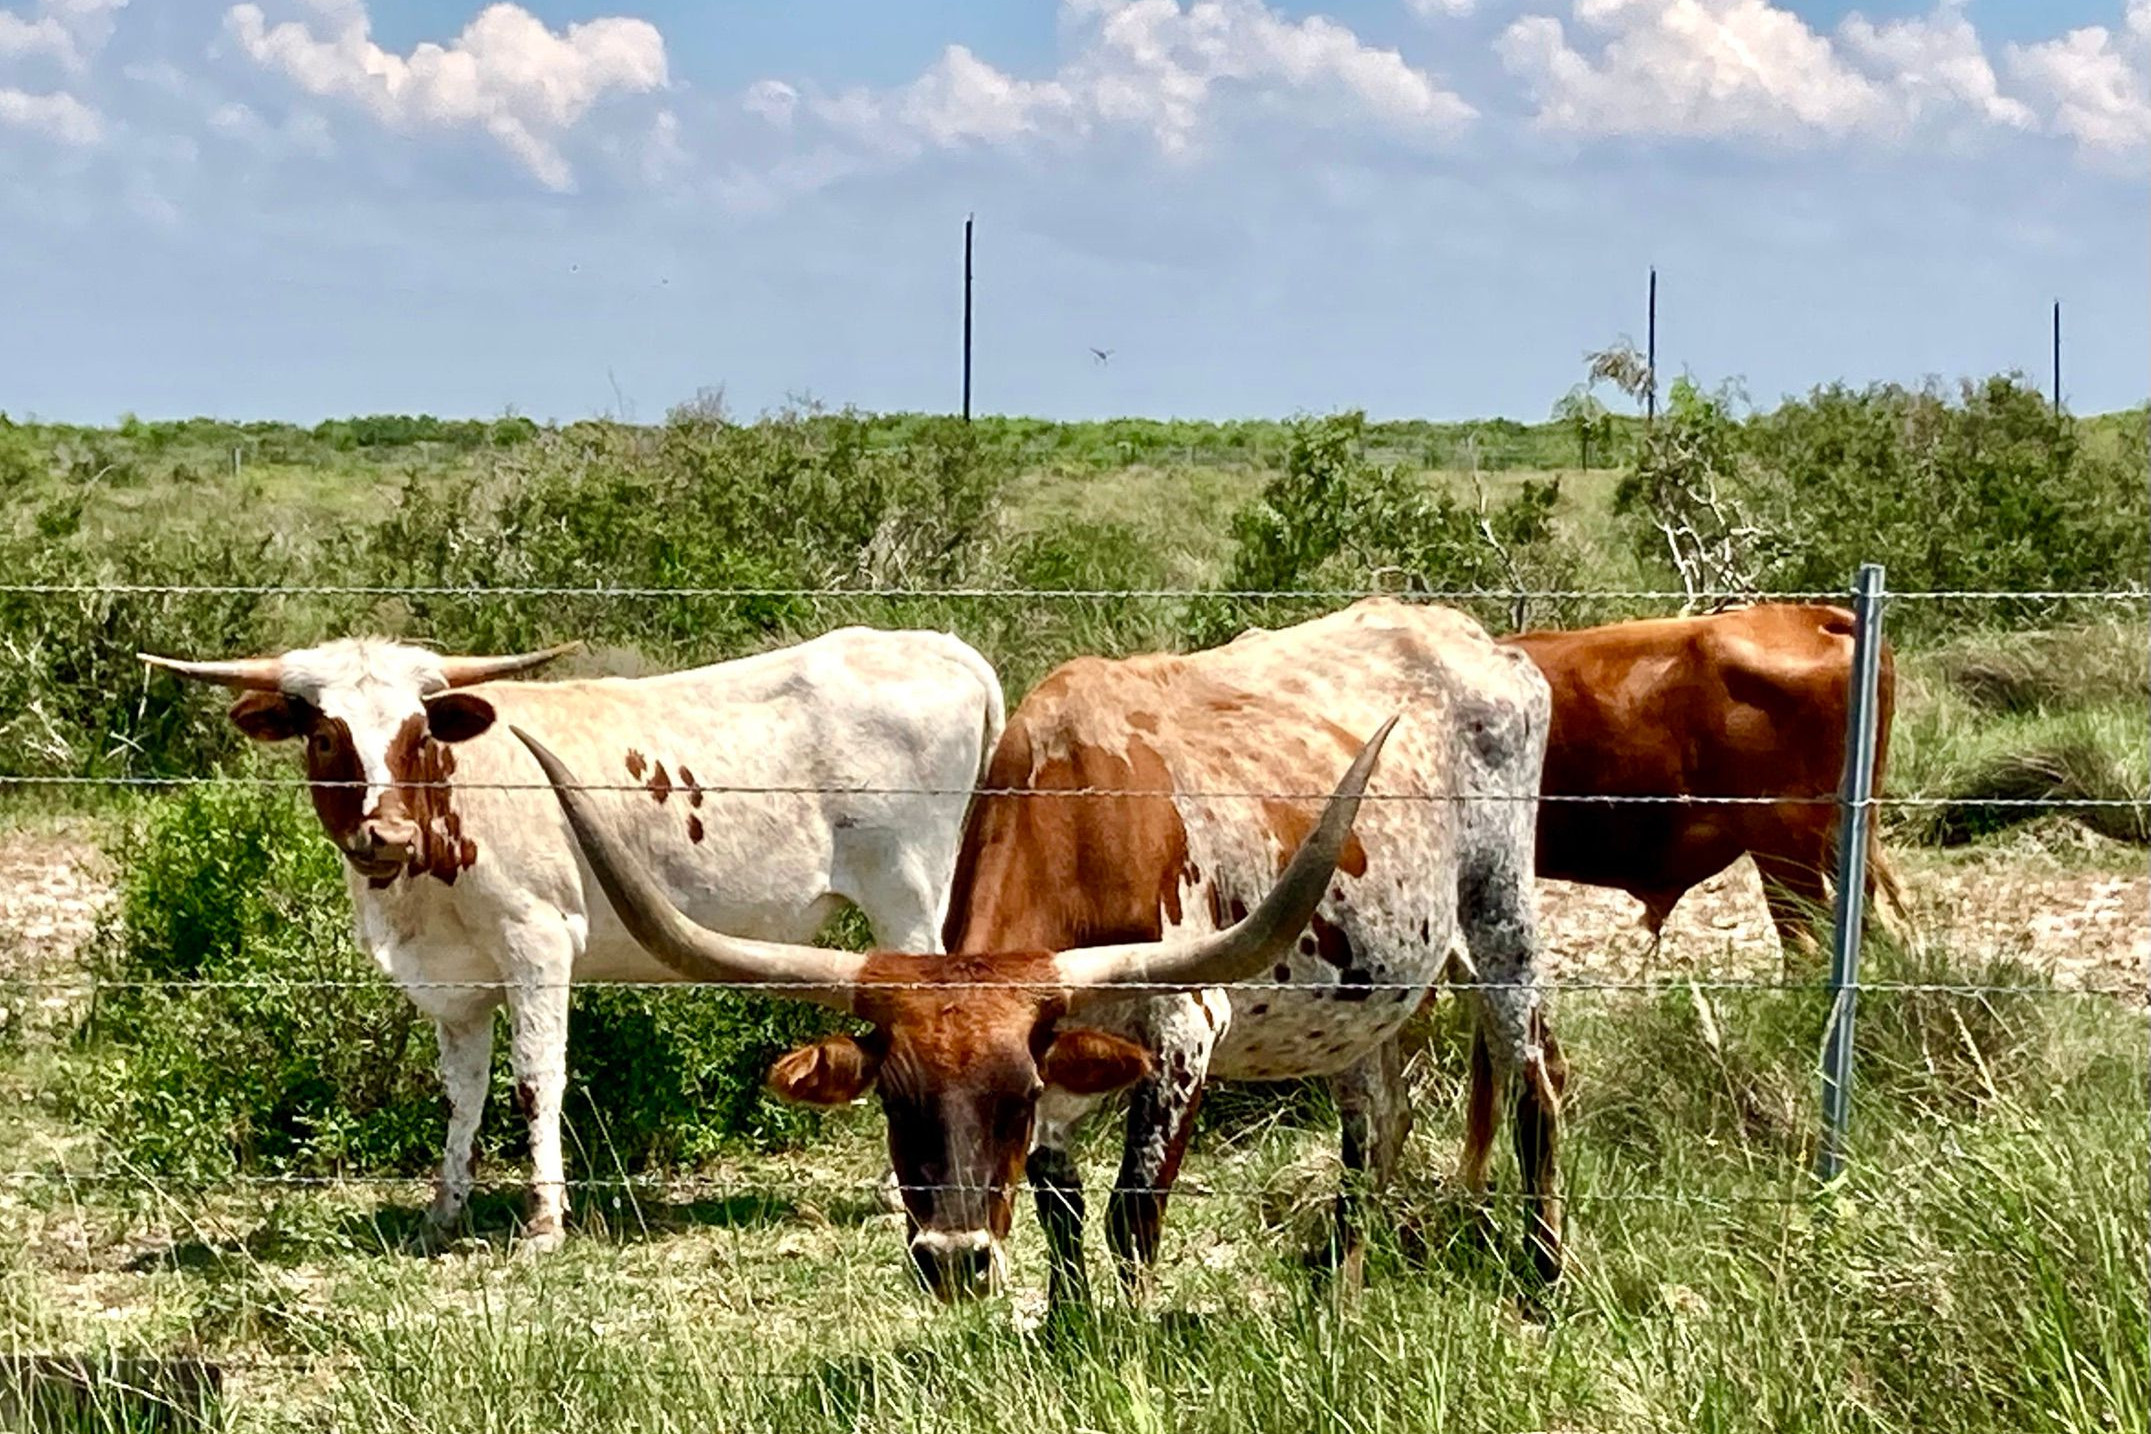 Longhorns grazing in a field